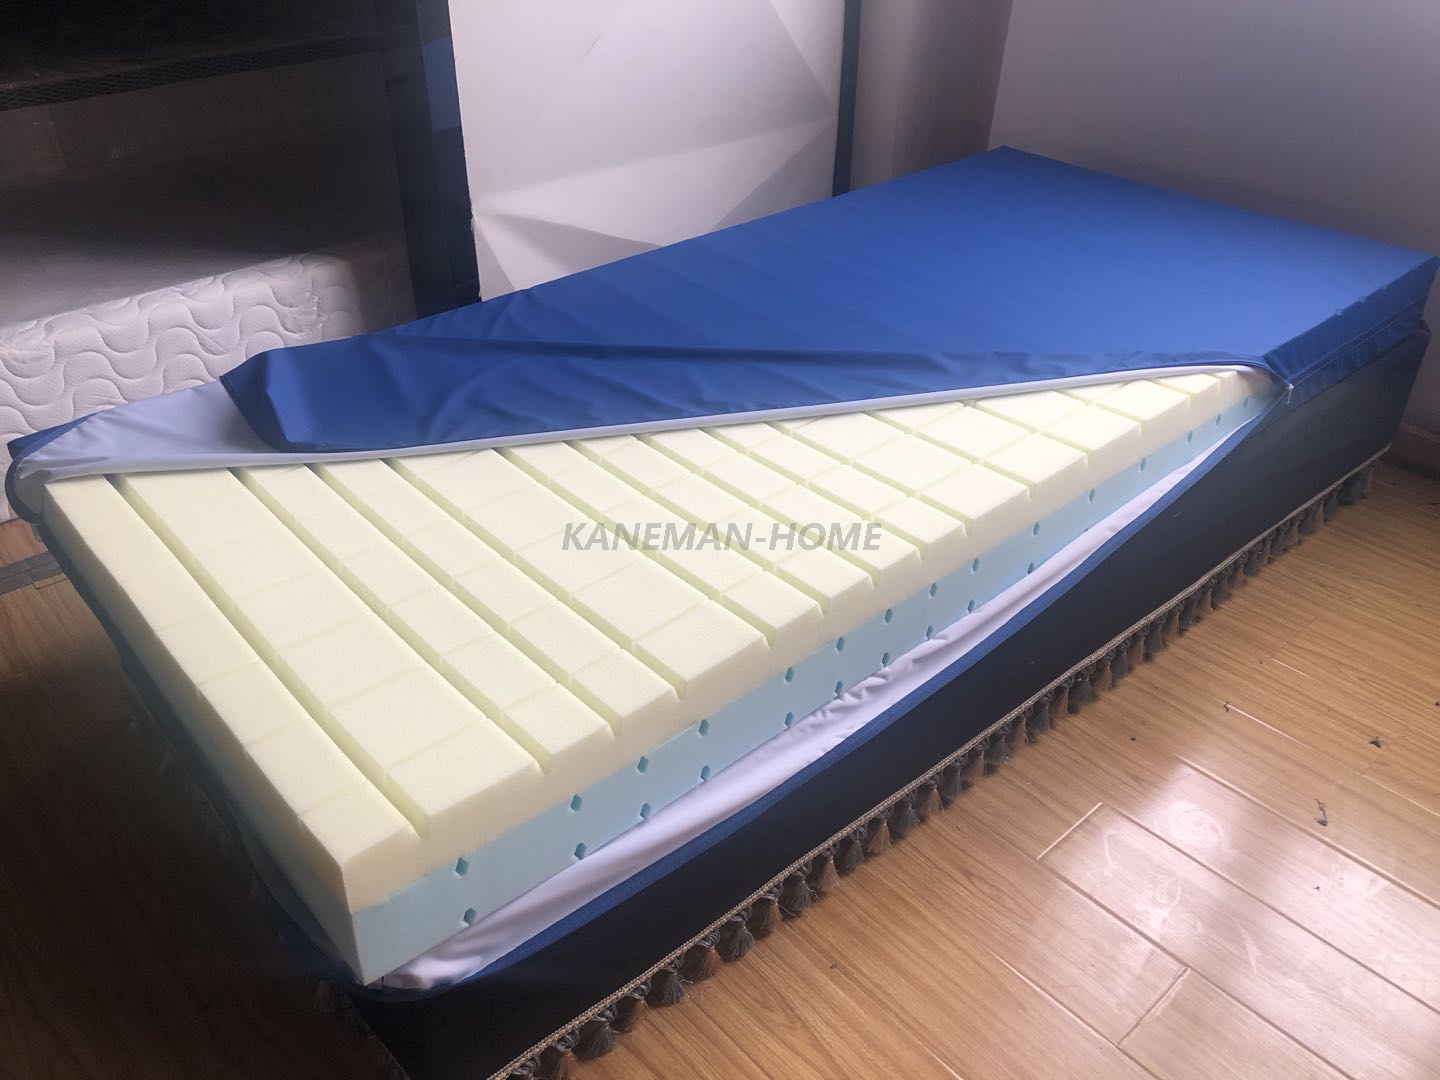 mattress pads for nursing home